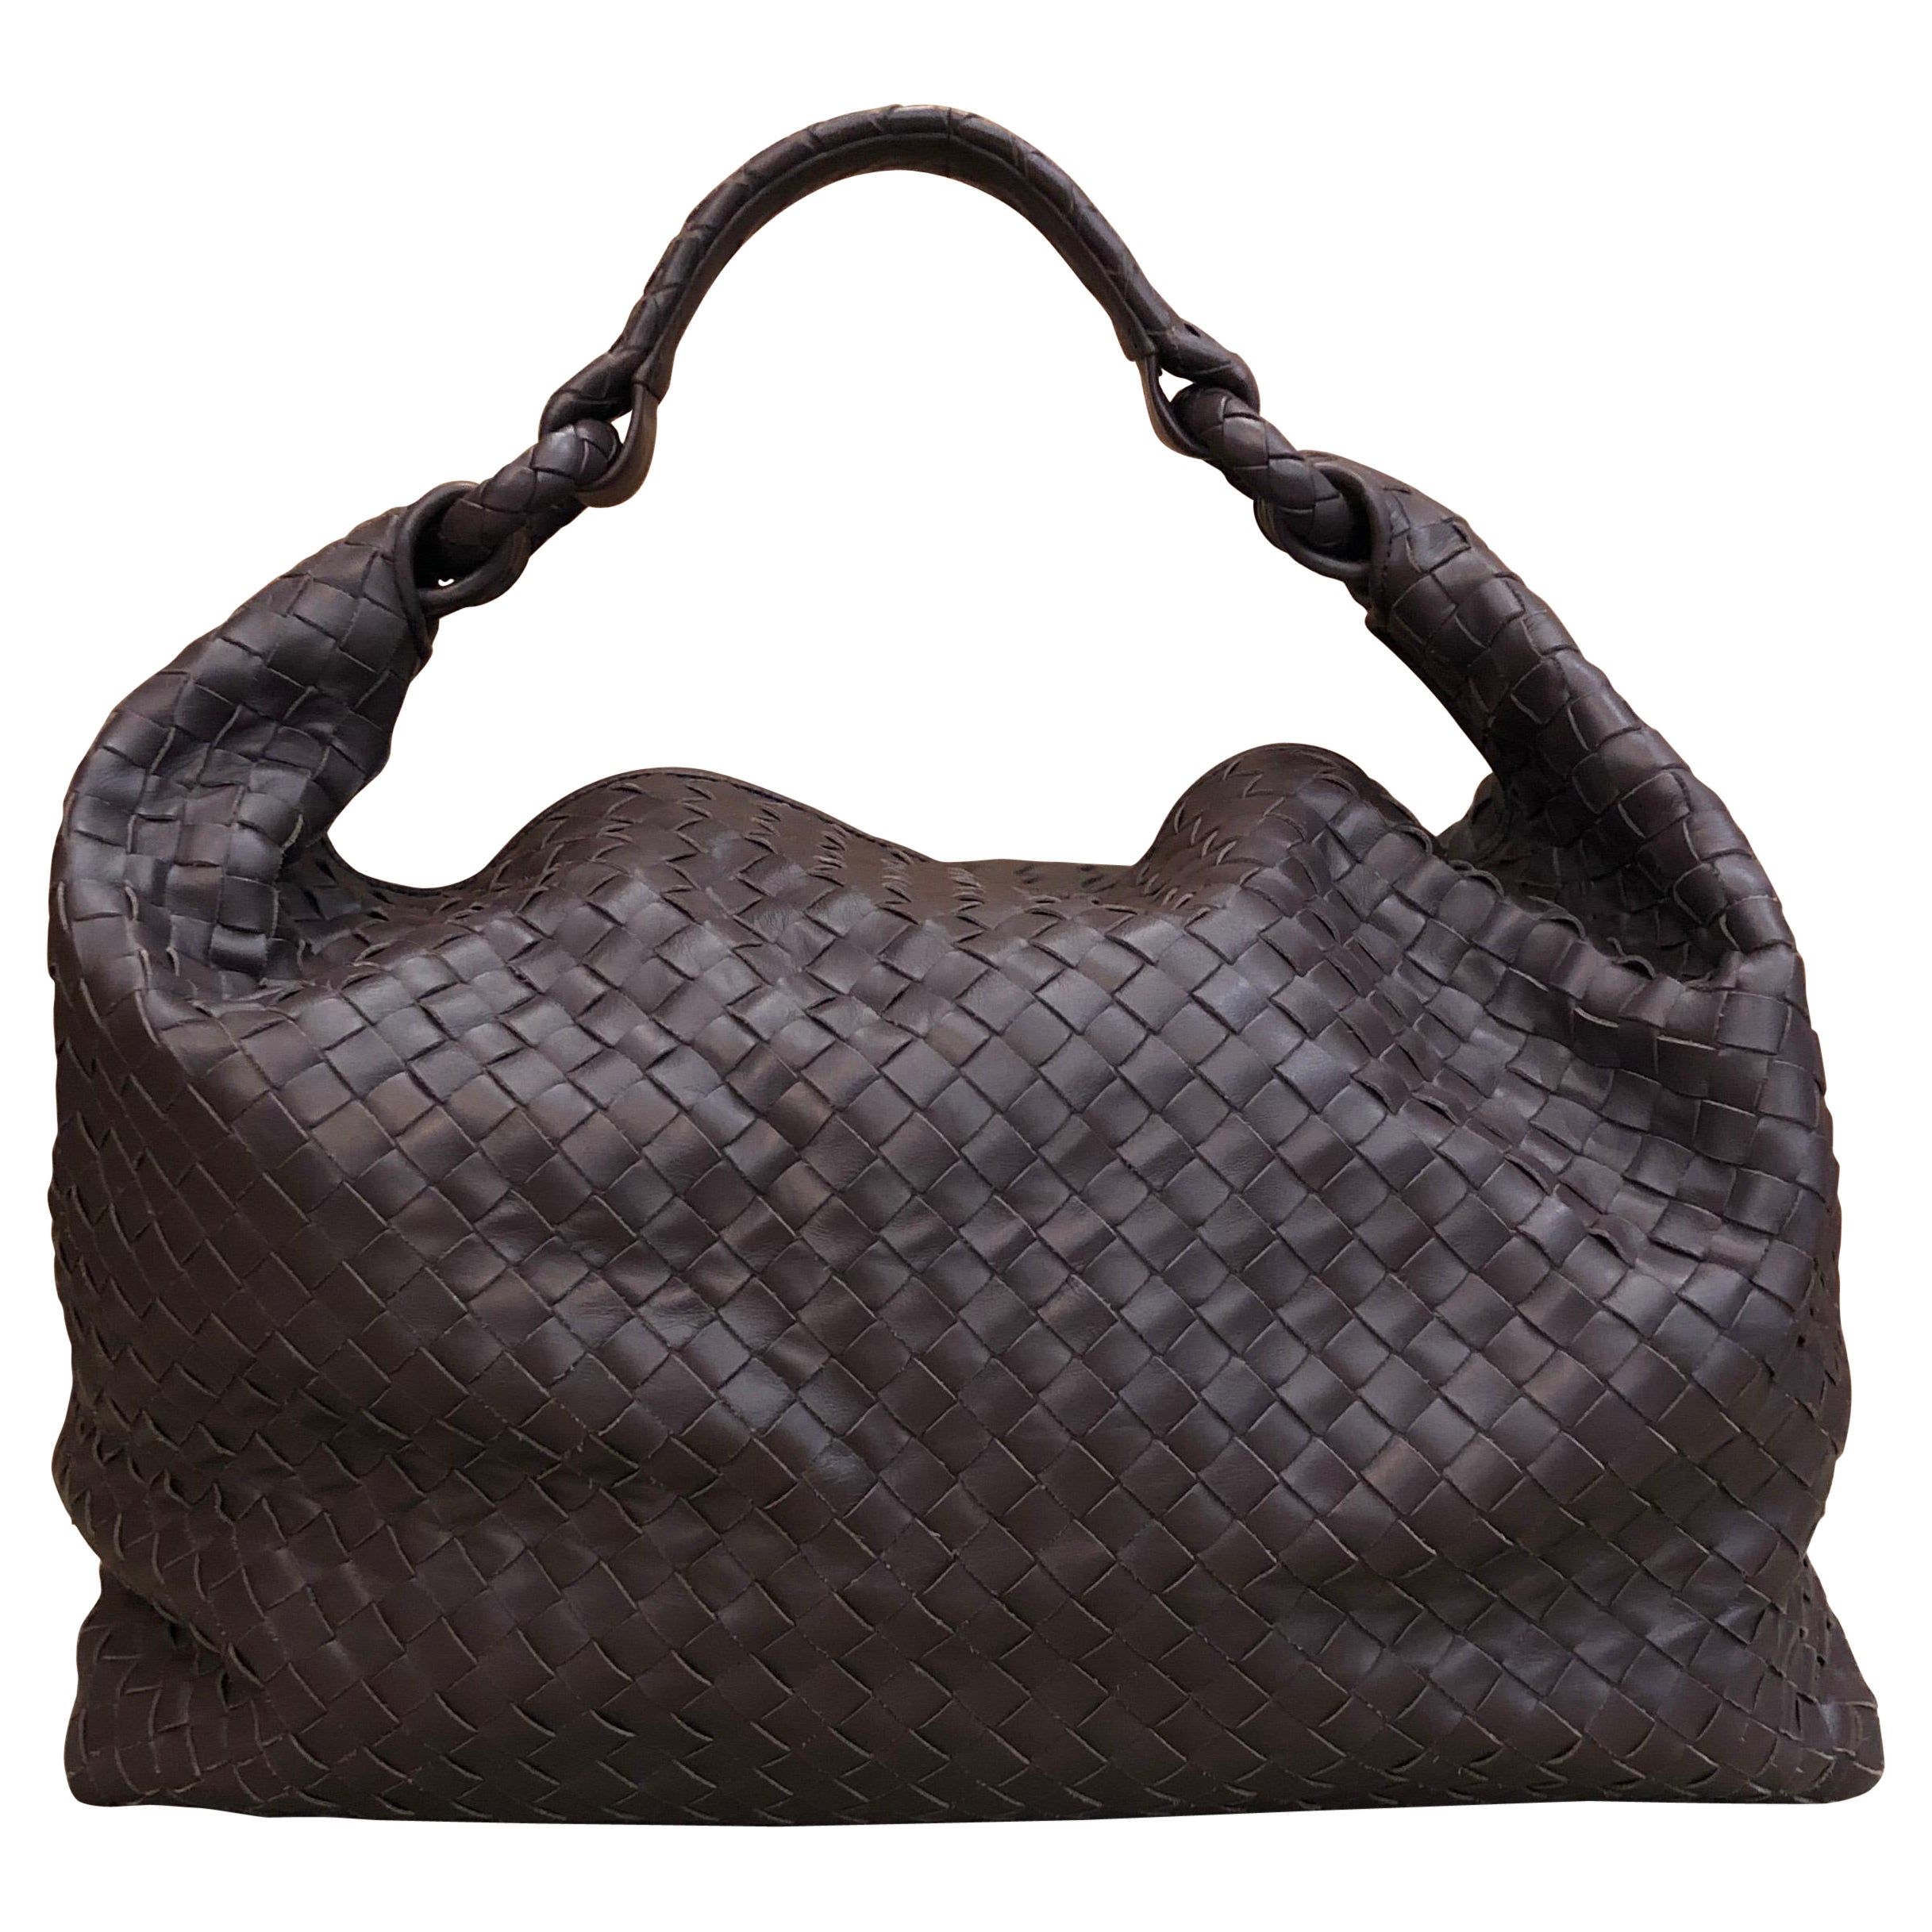 2010s Bottega Veneta Brown Intrecciato Nappa Leather Hobo Bag